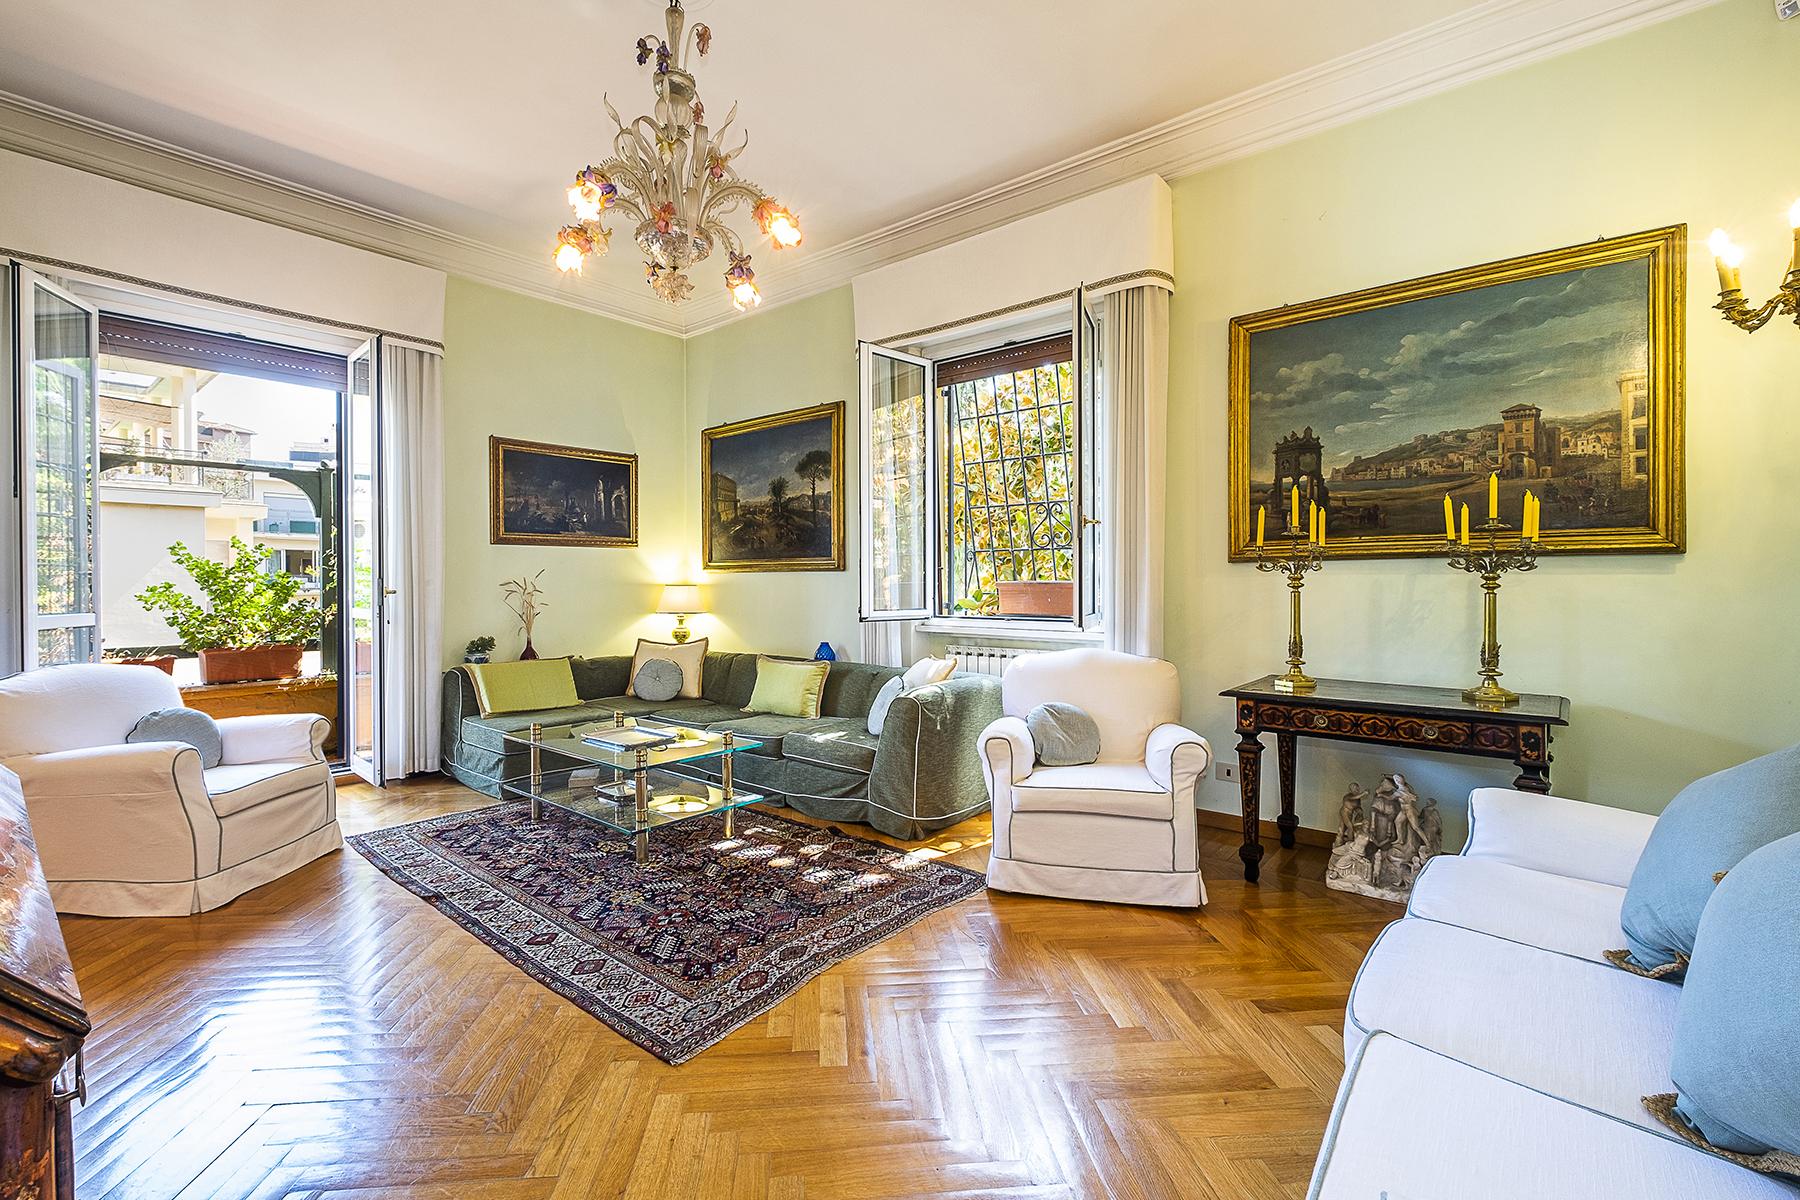 Schöne Wohnung wenige Schritte von der Villa Borghese entfernt - 2